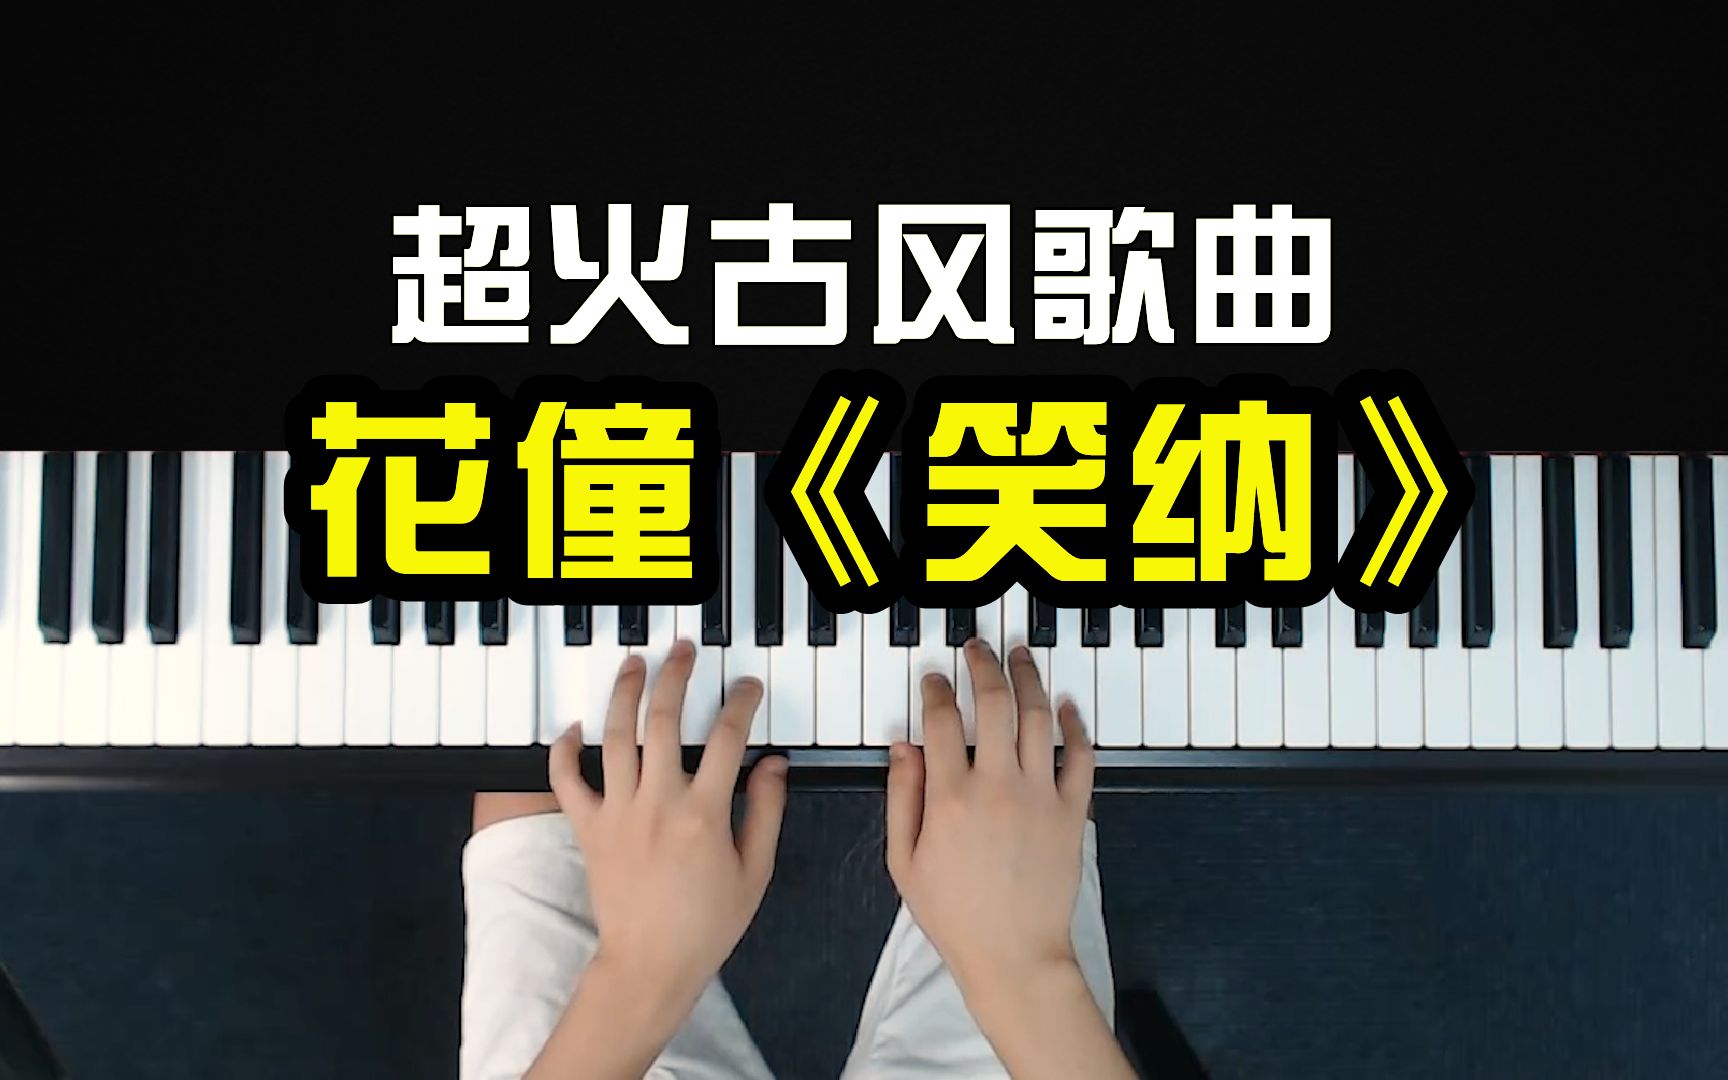 超火古风歌曲《笑纳》,粤语加国语果然好听!5分钟教你钢琴弹唱